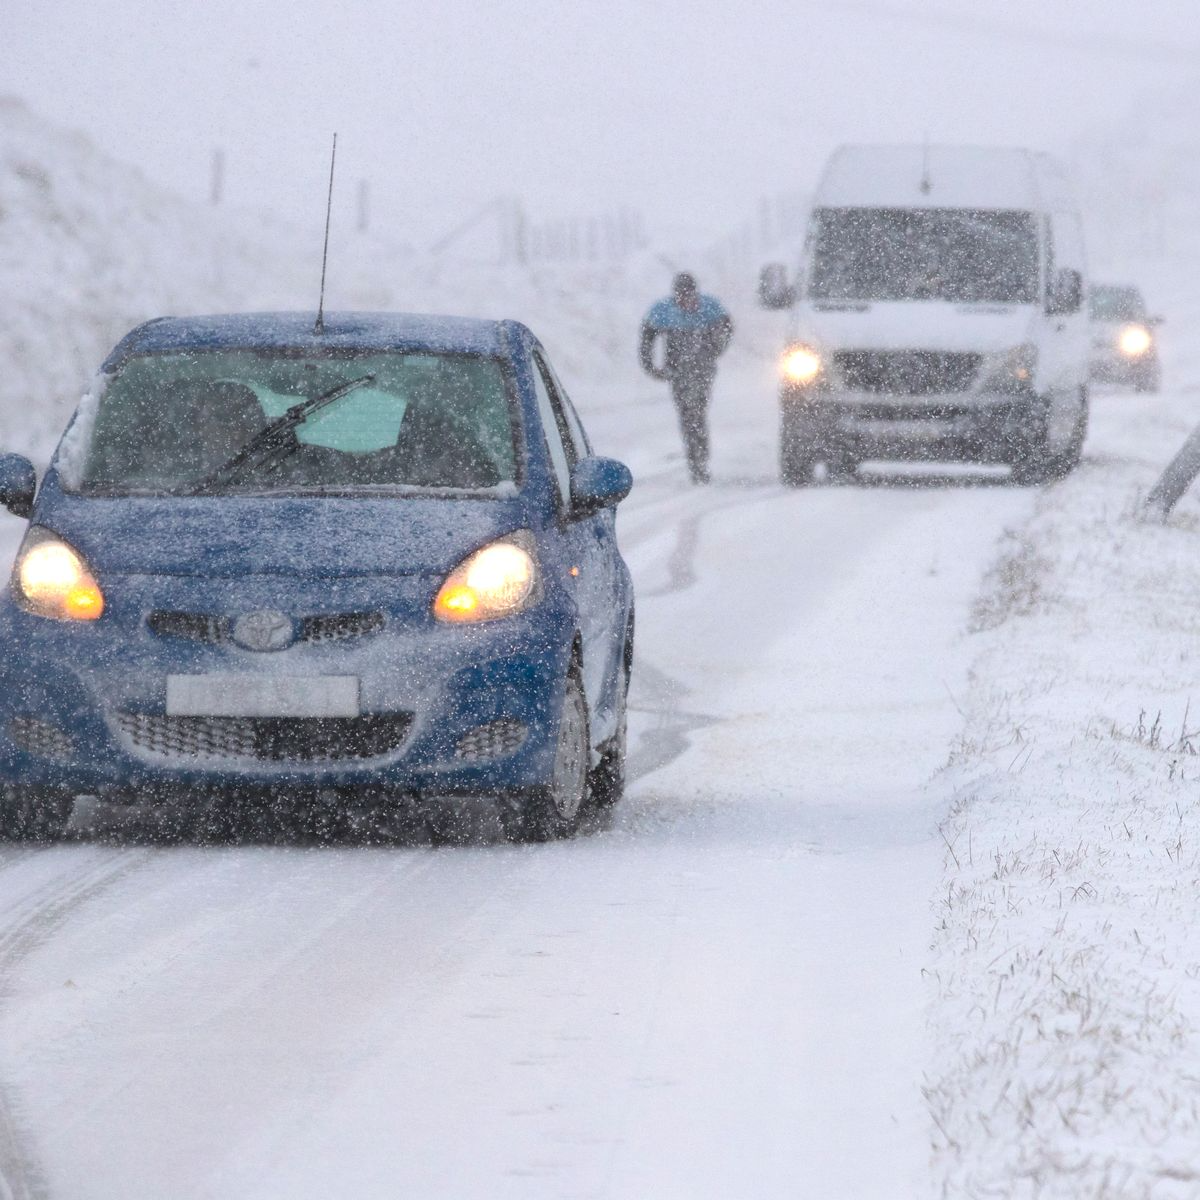 Vương quốc Anh trải qua đợt lạnh kỷ lục vào đầu mùa đông - Ảnh 1.